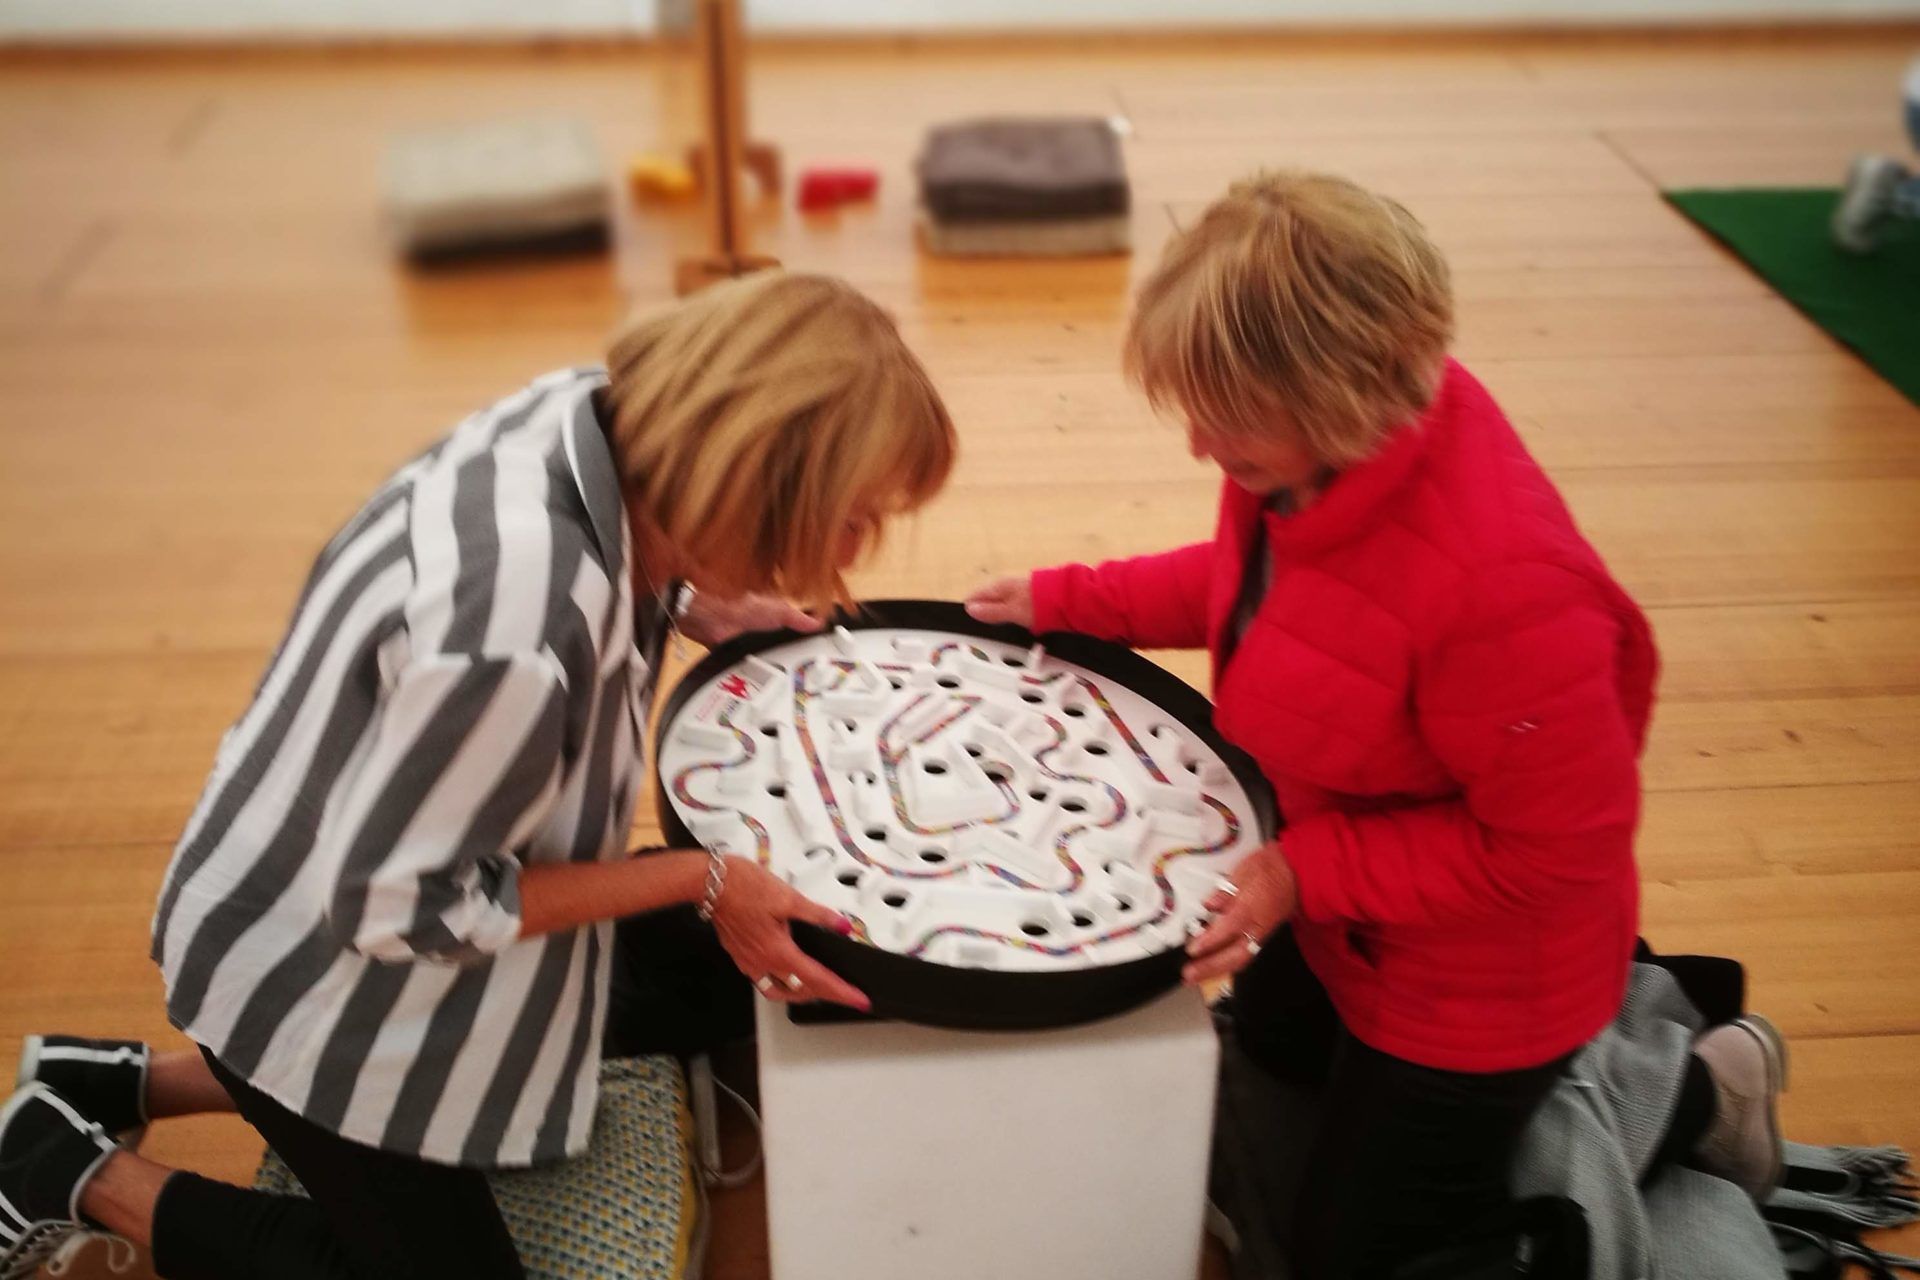 Deux femmes senior s'amusant avec le labyrinthe à bille géant petit modèle.